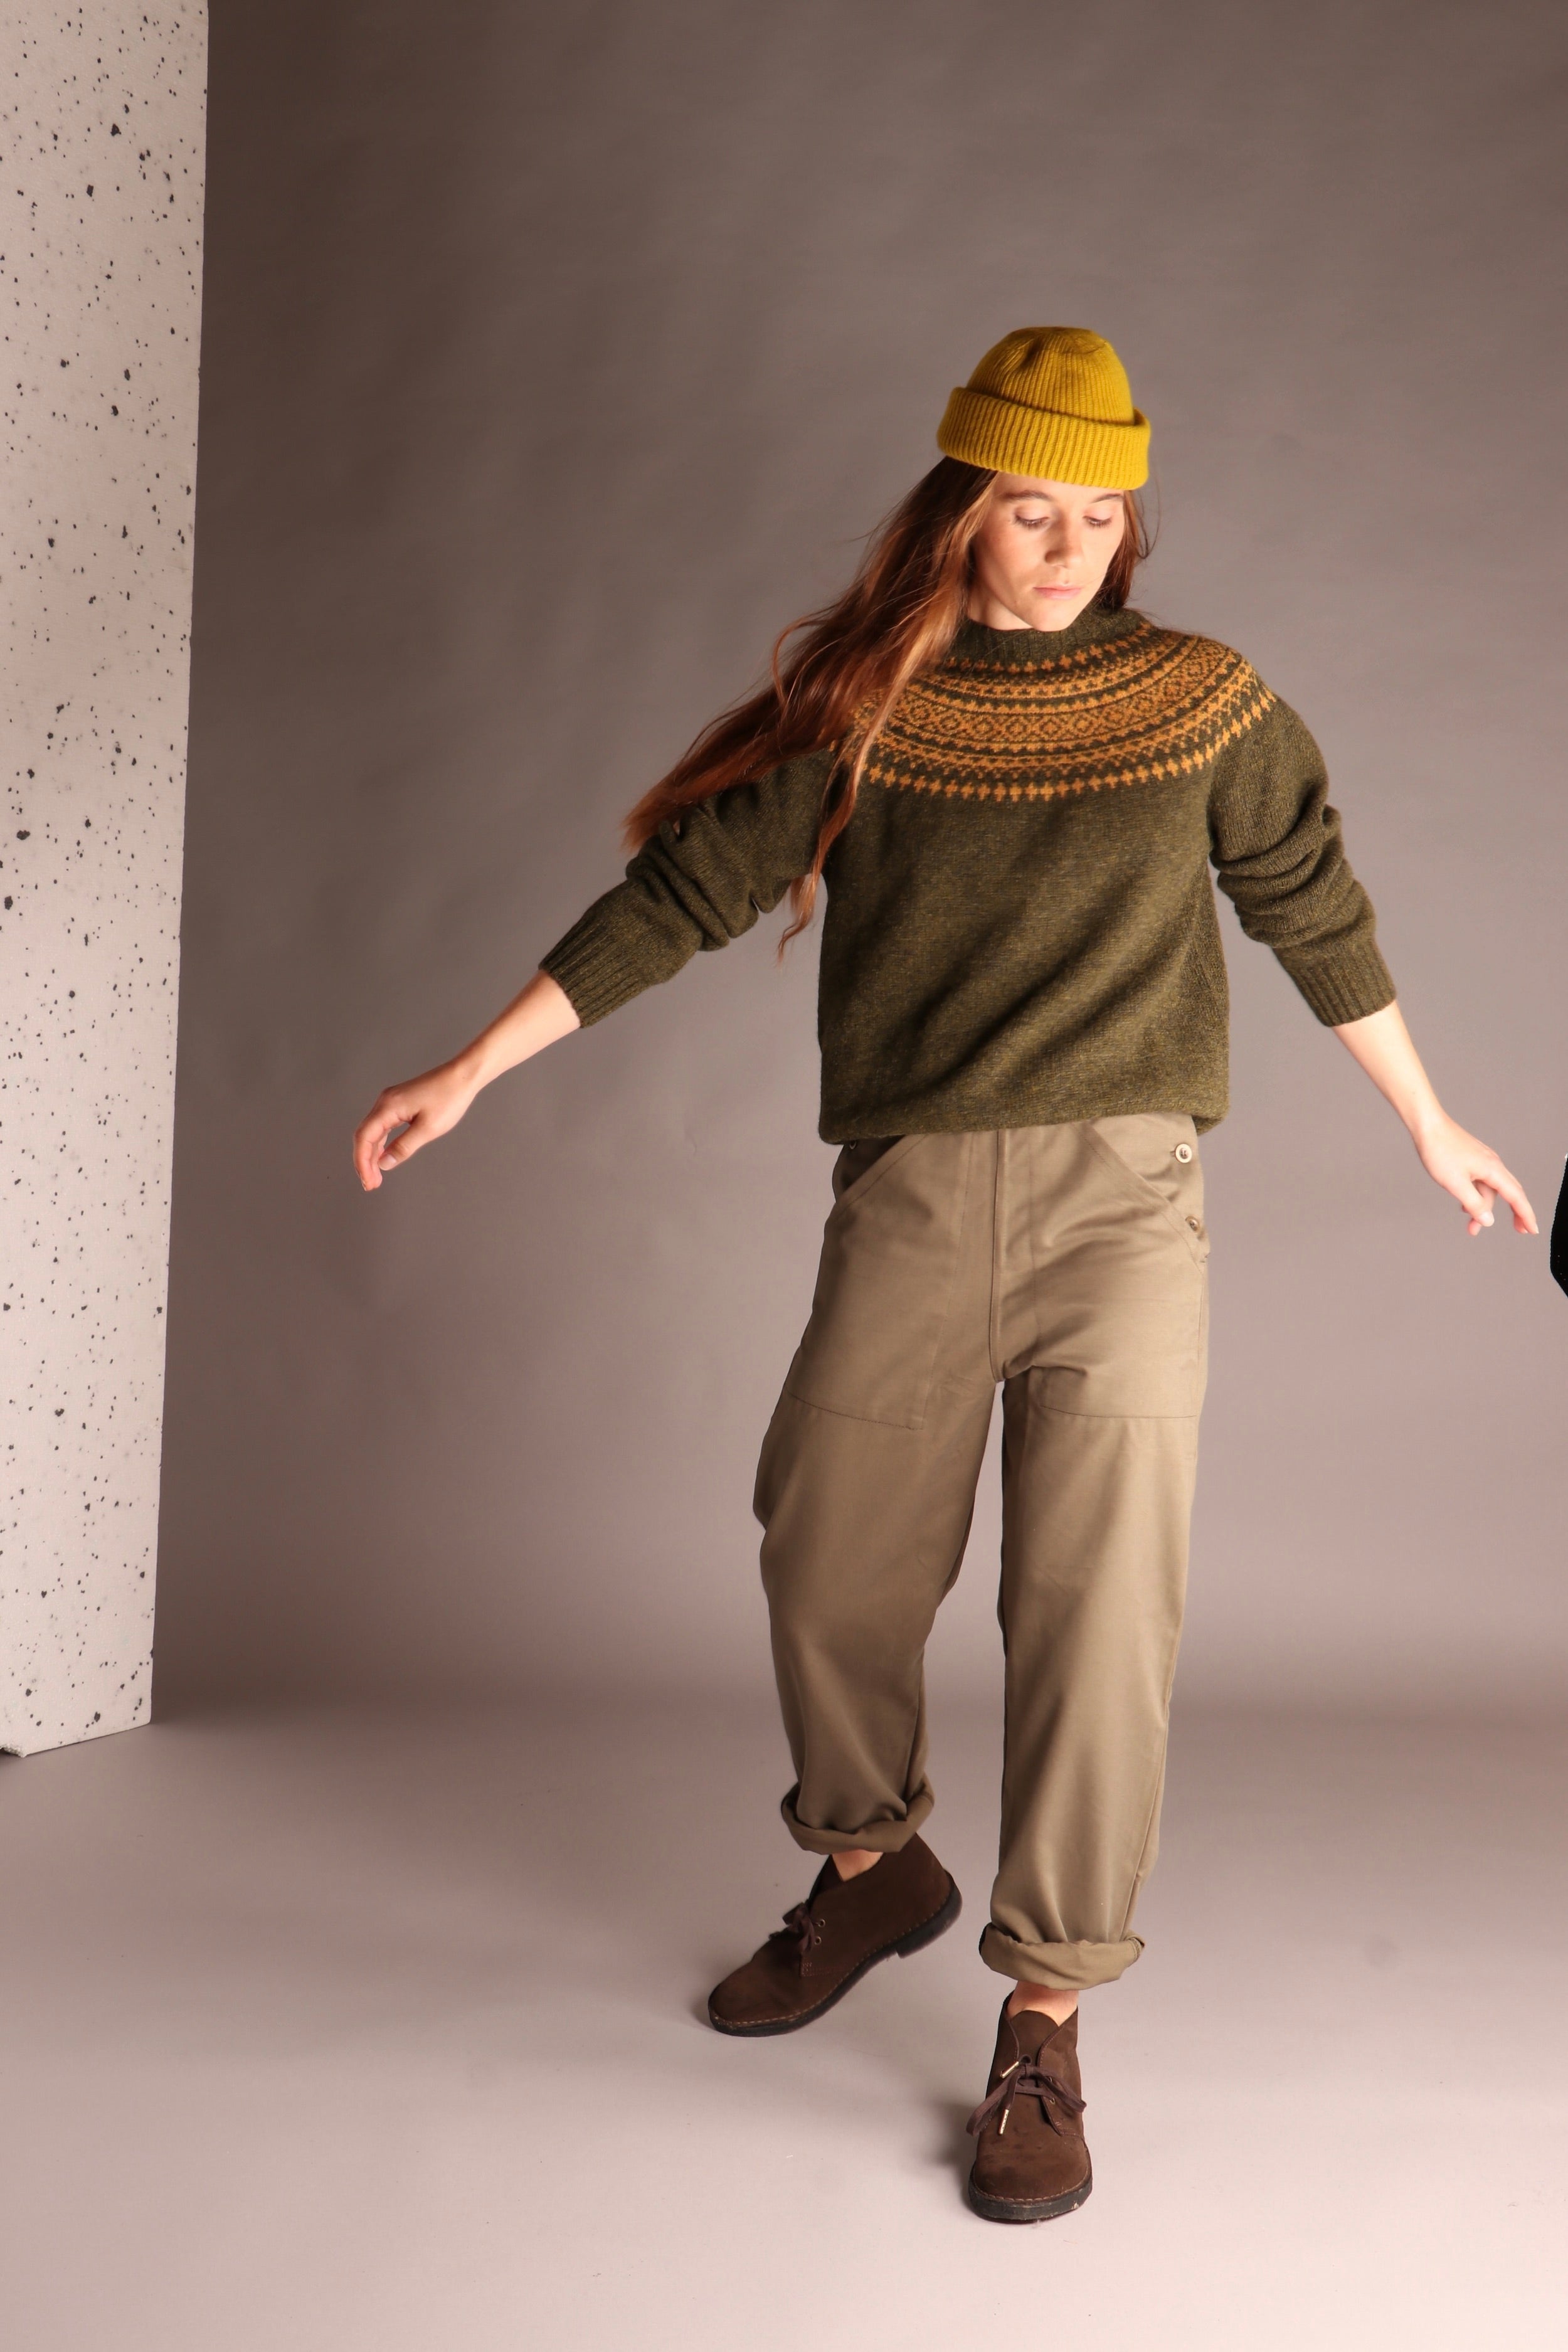 Decca wears Carrier Company Shetland Lambswool Yoke Jumper with Women's Work Trouser and Wool Hat